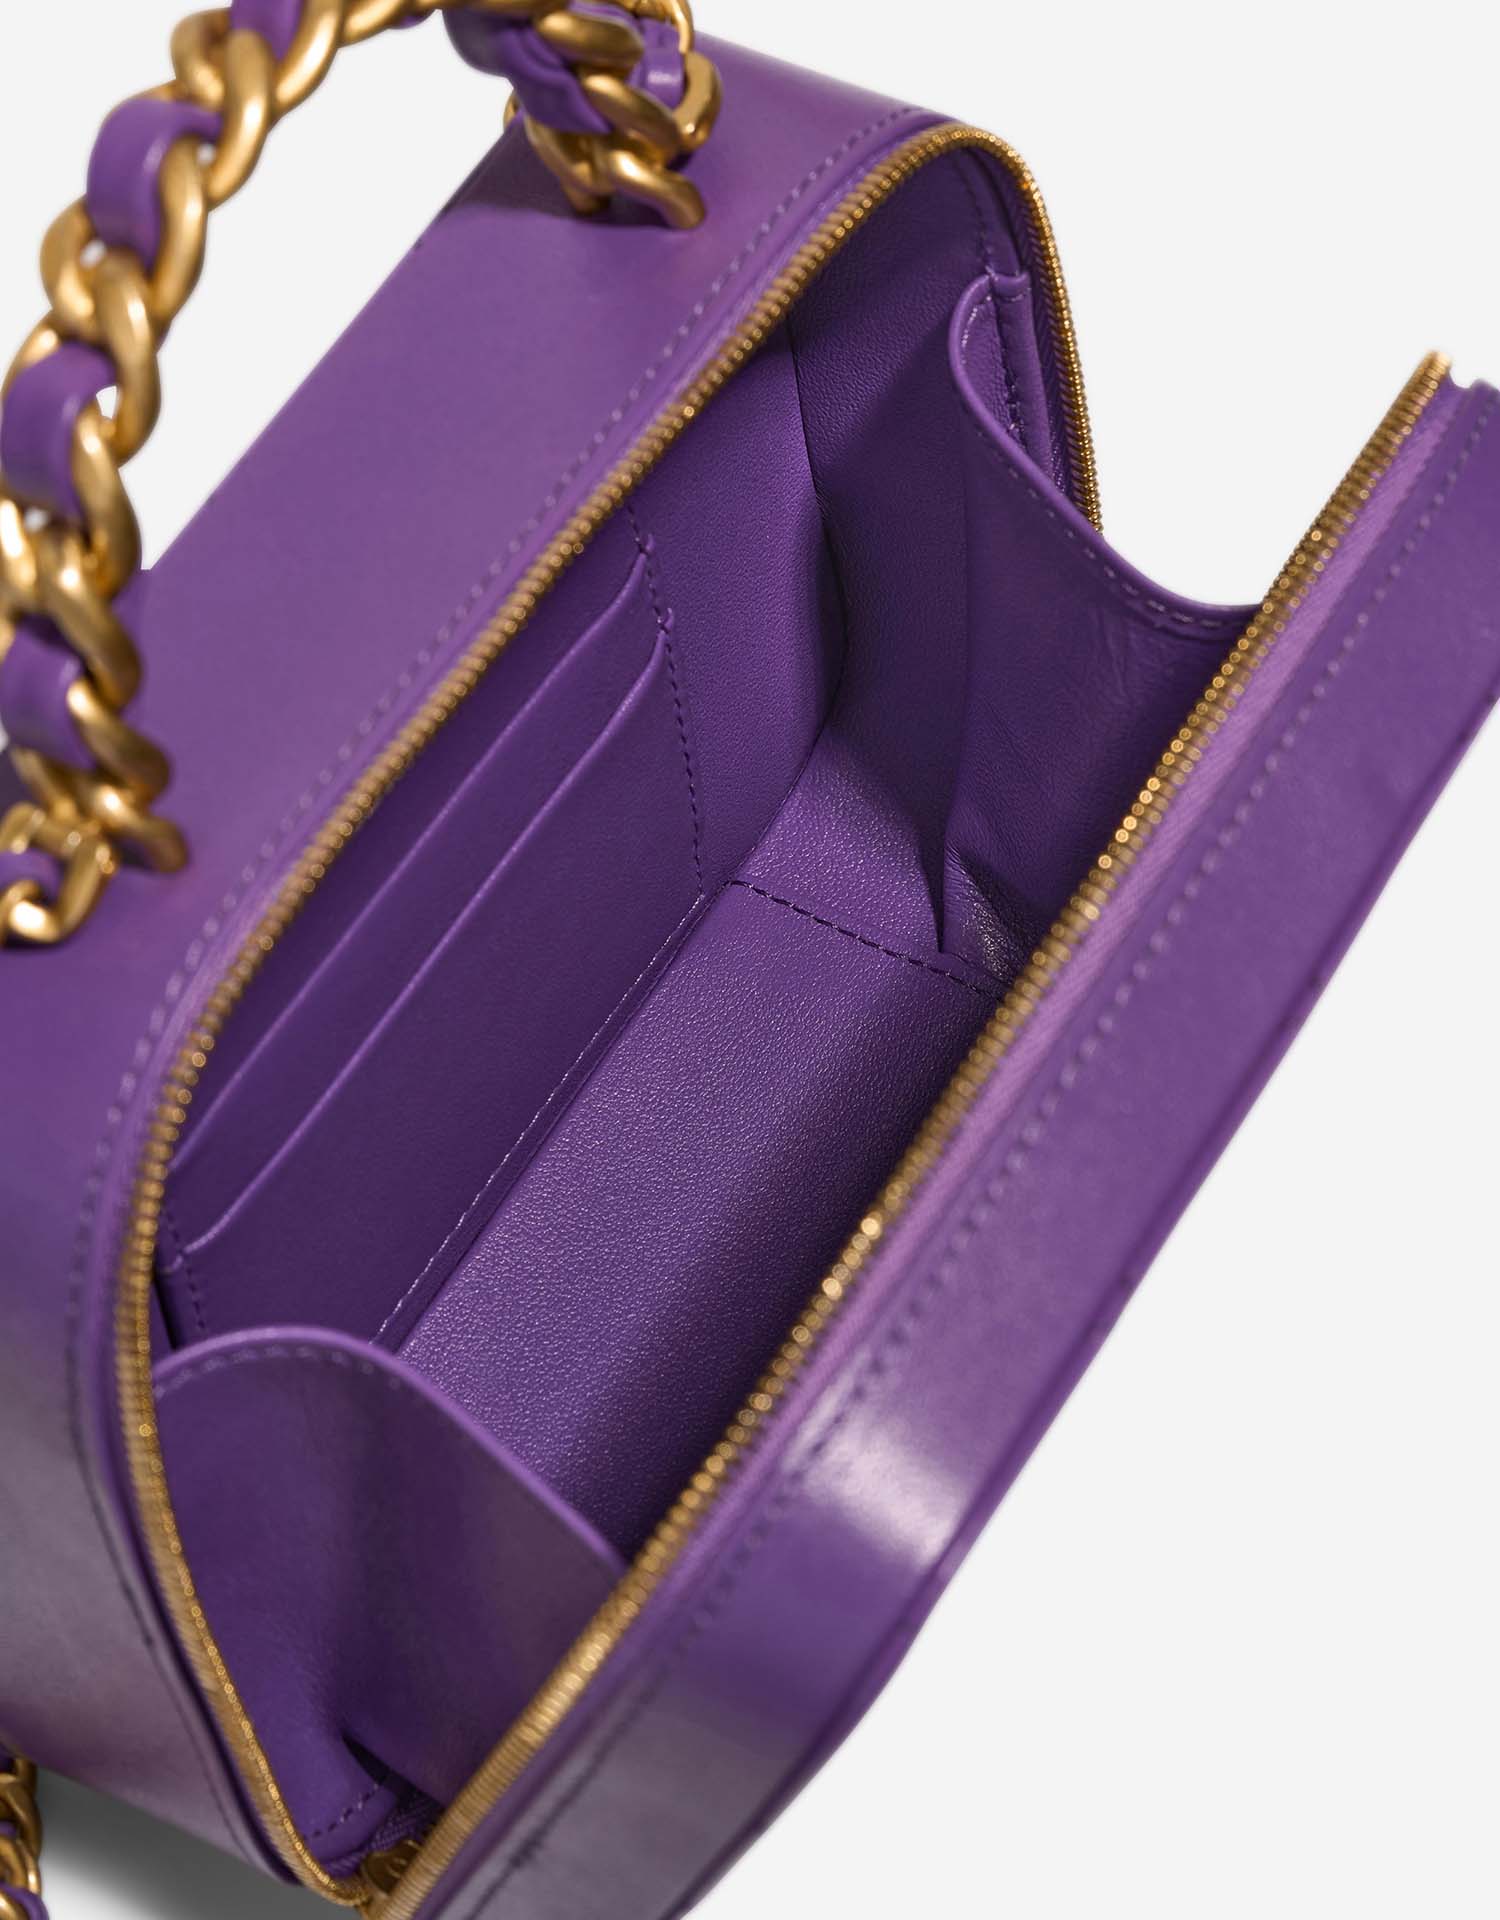 Chanel Vanity Small Violet Inside | Verkaufen Sie Ihre Designer-Tasche auf Saclab.com